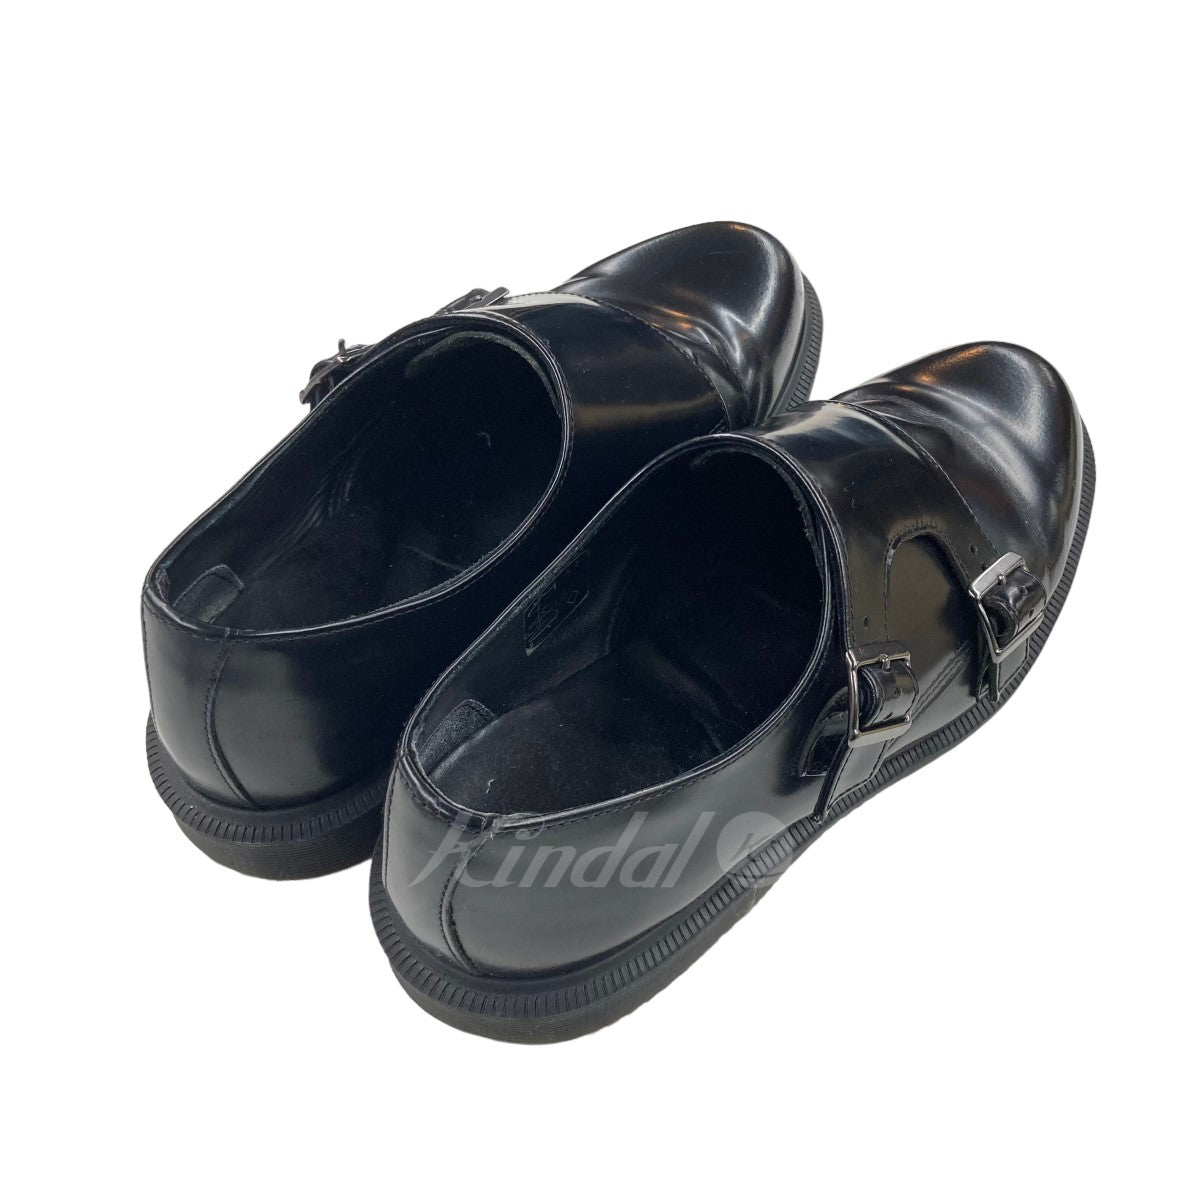 SALEお買い得Dr.Martens PANDORA ダブルモンクストラップシューズ 黒 38 靴